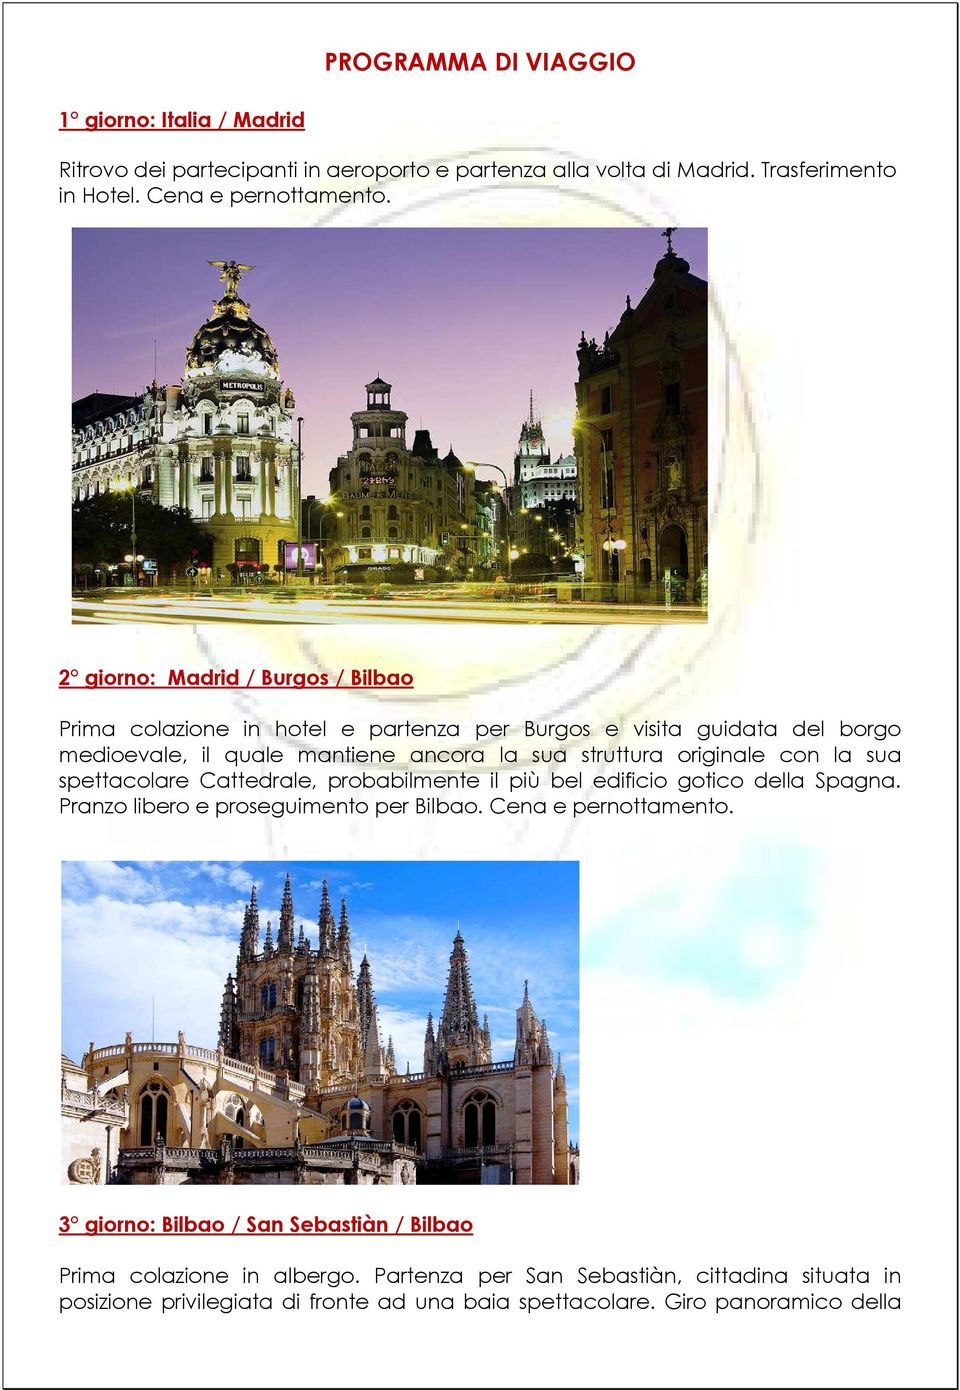 con la sua spettacolare Cattedrale, probabilmente il più bel edificio gotico della Spagna. Pranzo libero e proseguimento per Bilbao. Cena e pernottamento.